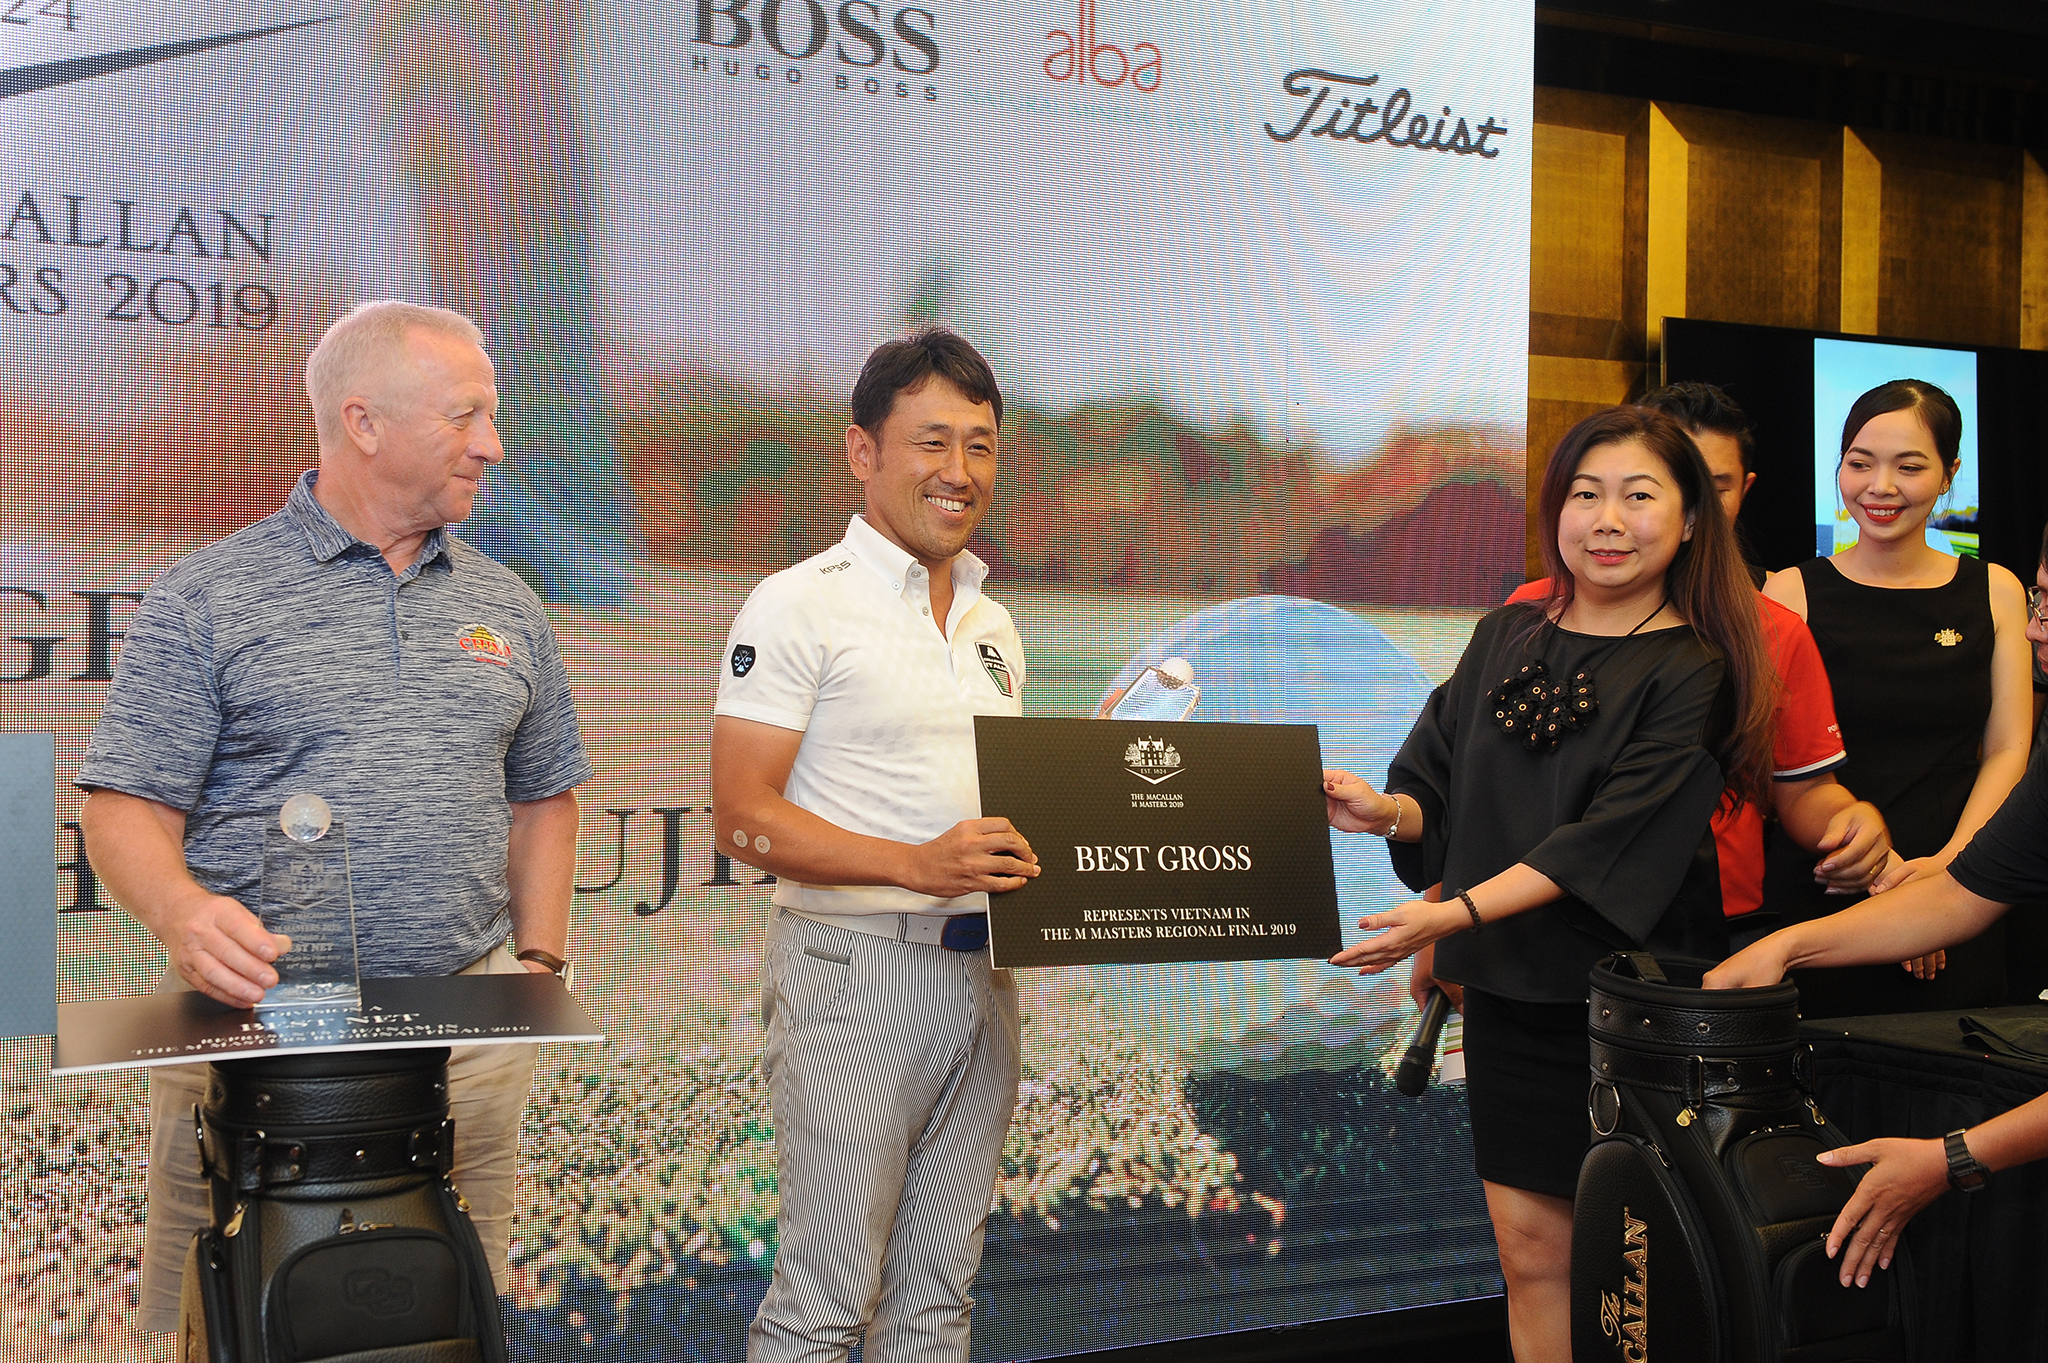 Lộ diện 4 gương mặt xuất sắc đại diện phía Nam tham sự giải golf "M Masters 2019" tại Thái Lan